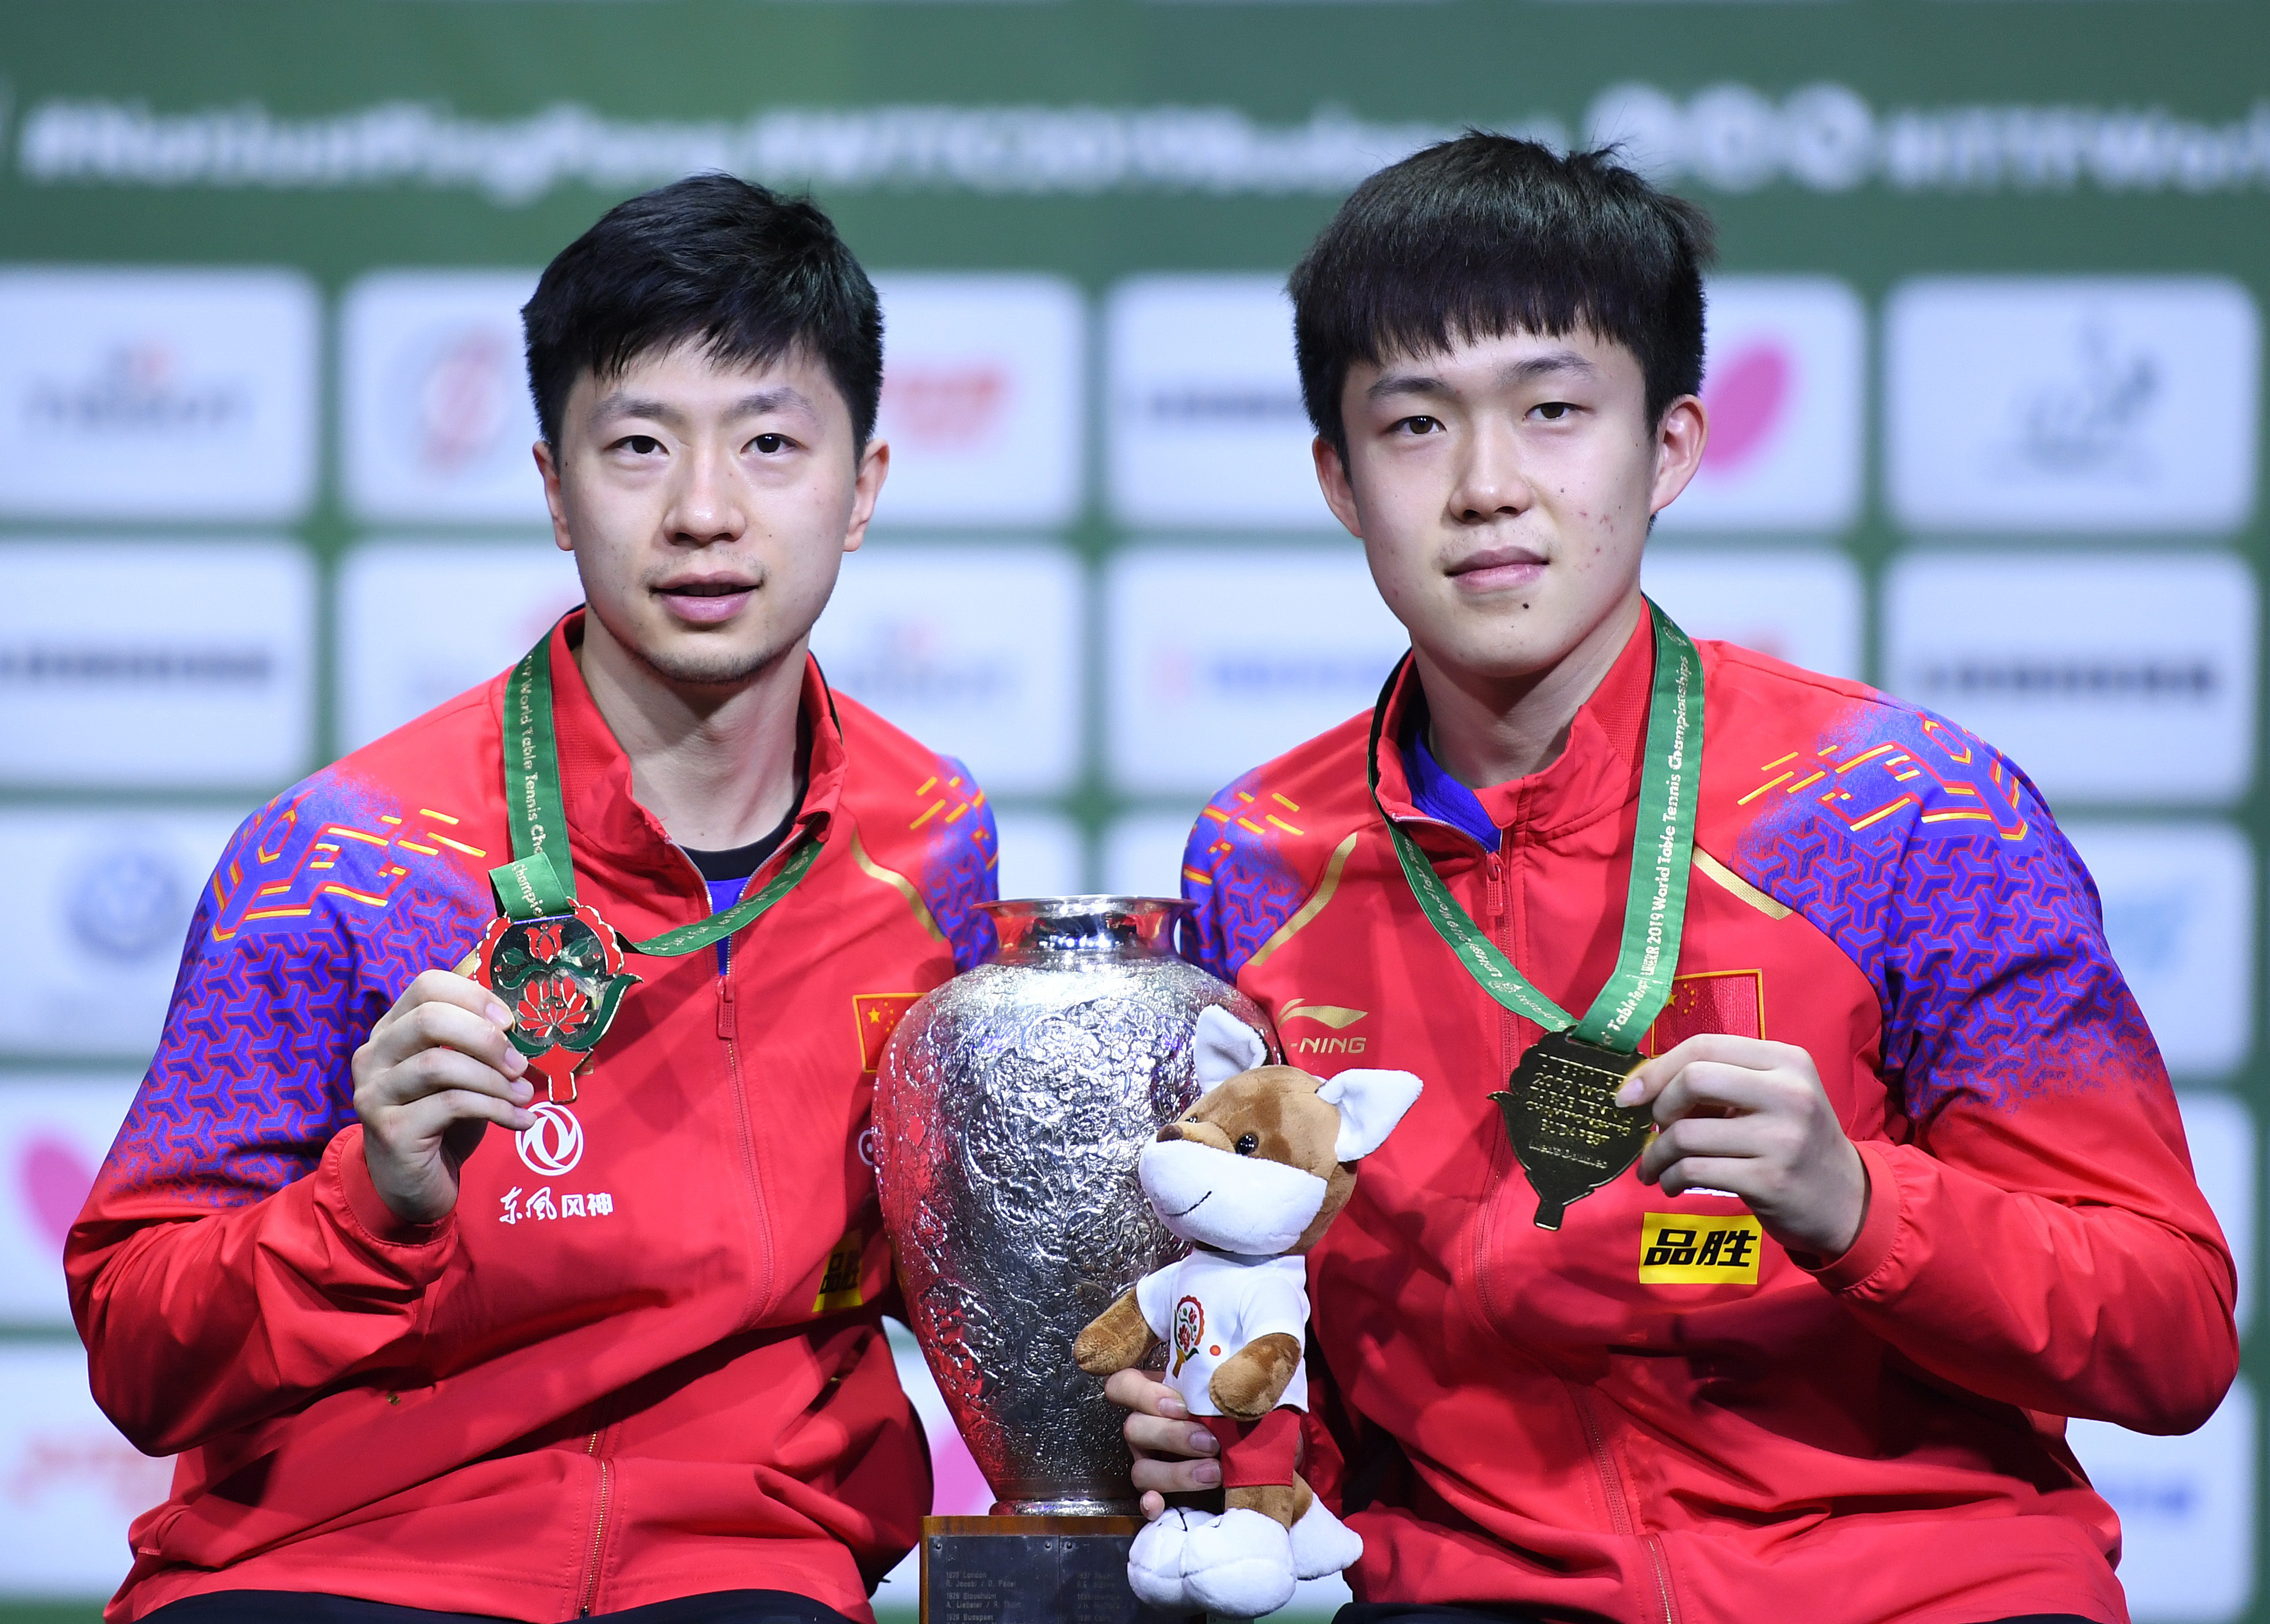 世界乒乓球锦标赛男子双打决赛中,中国选手马龙/王楚钦以4比1战胜跨国